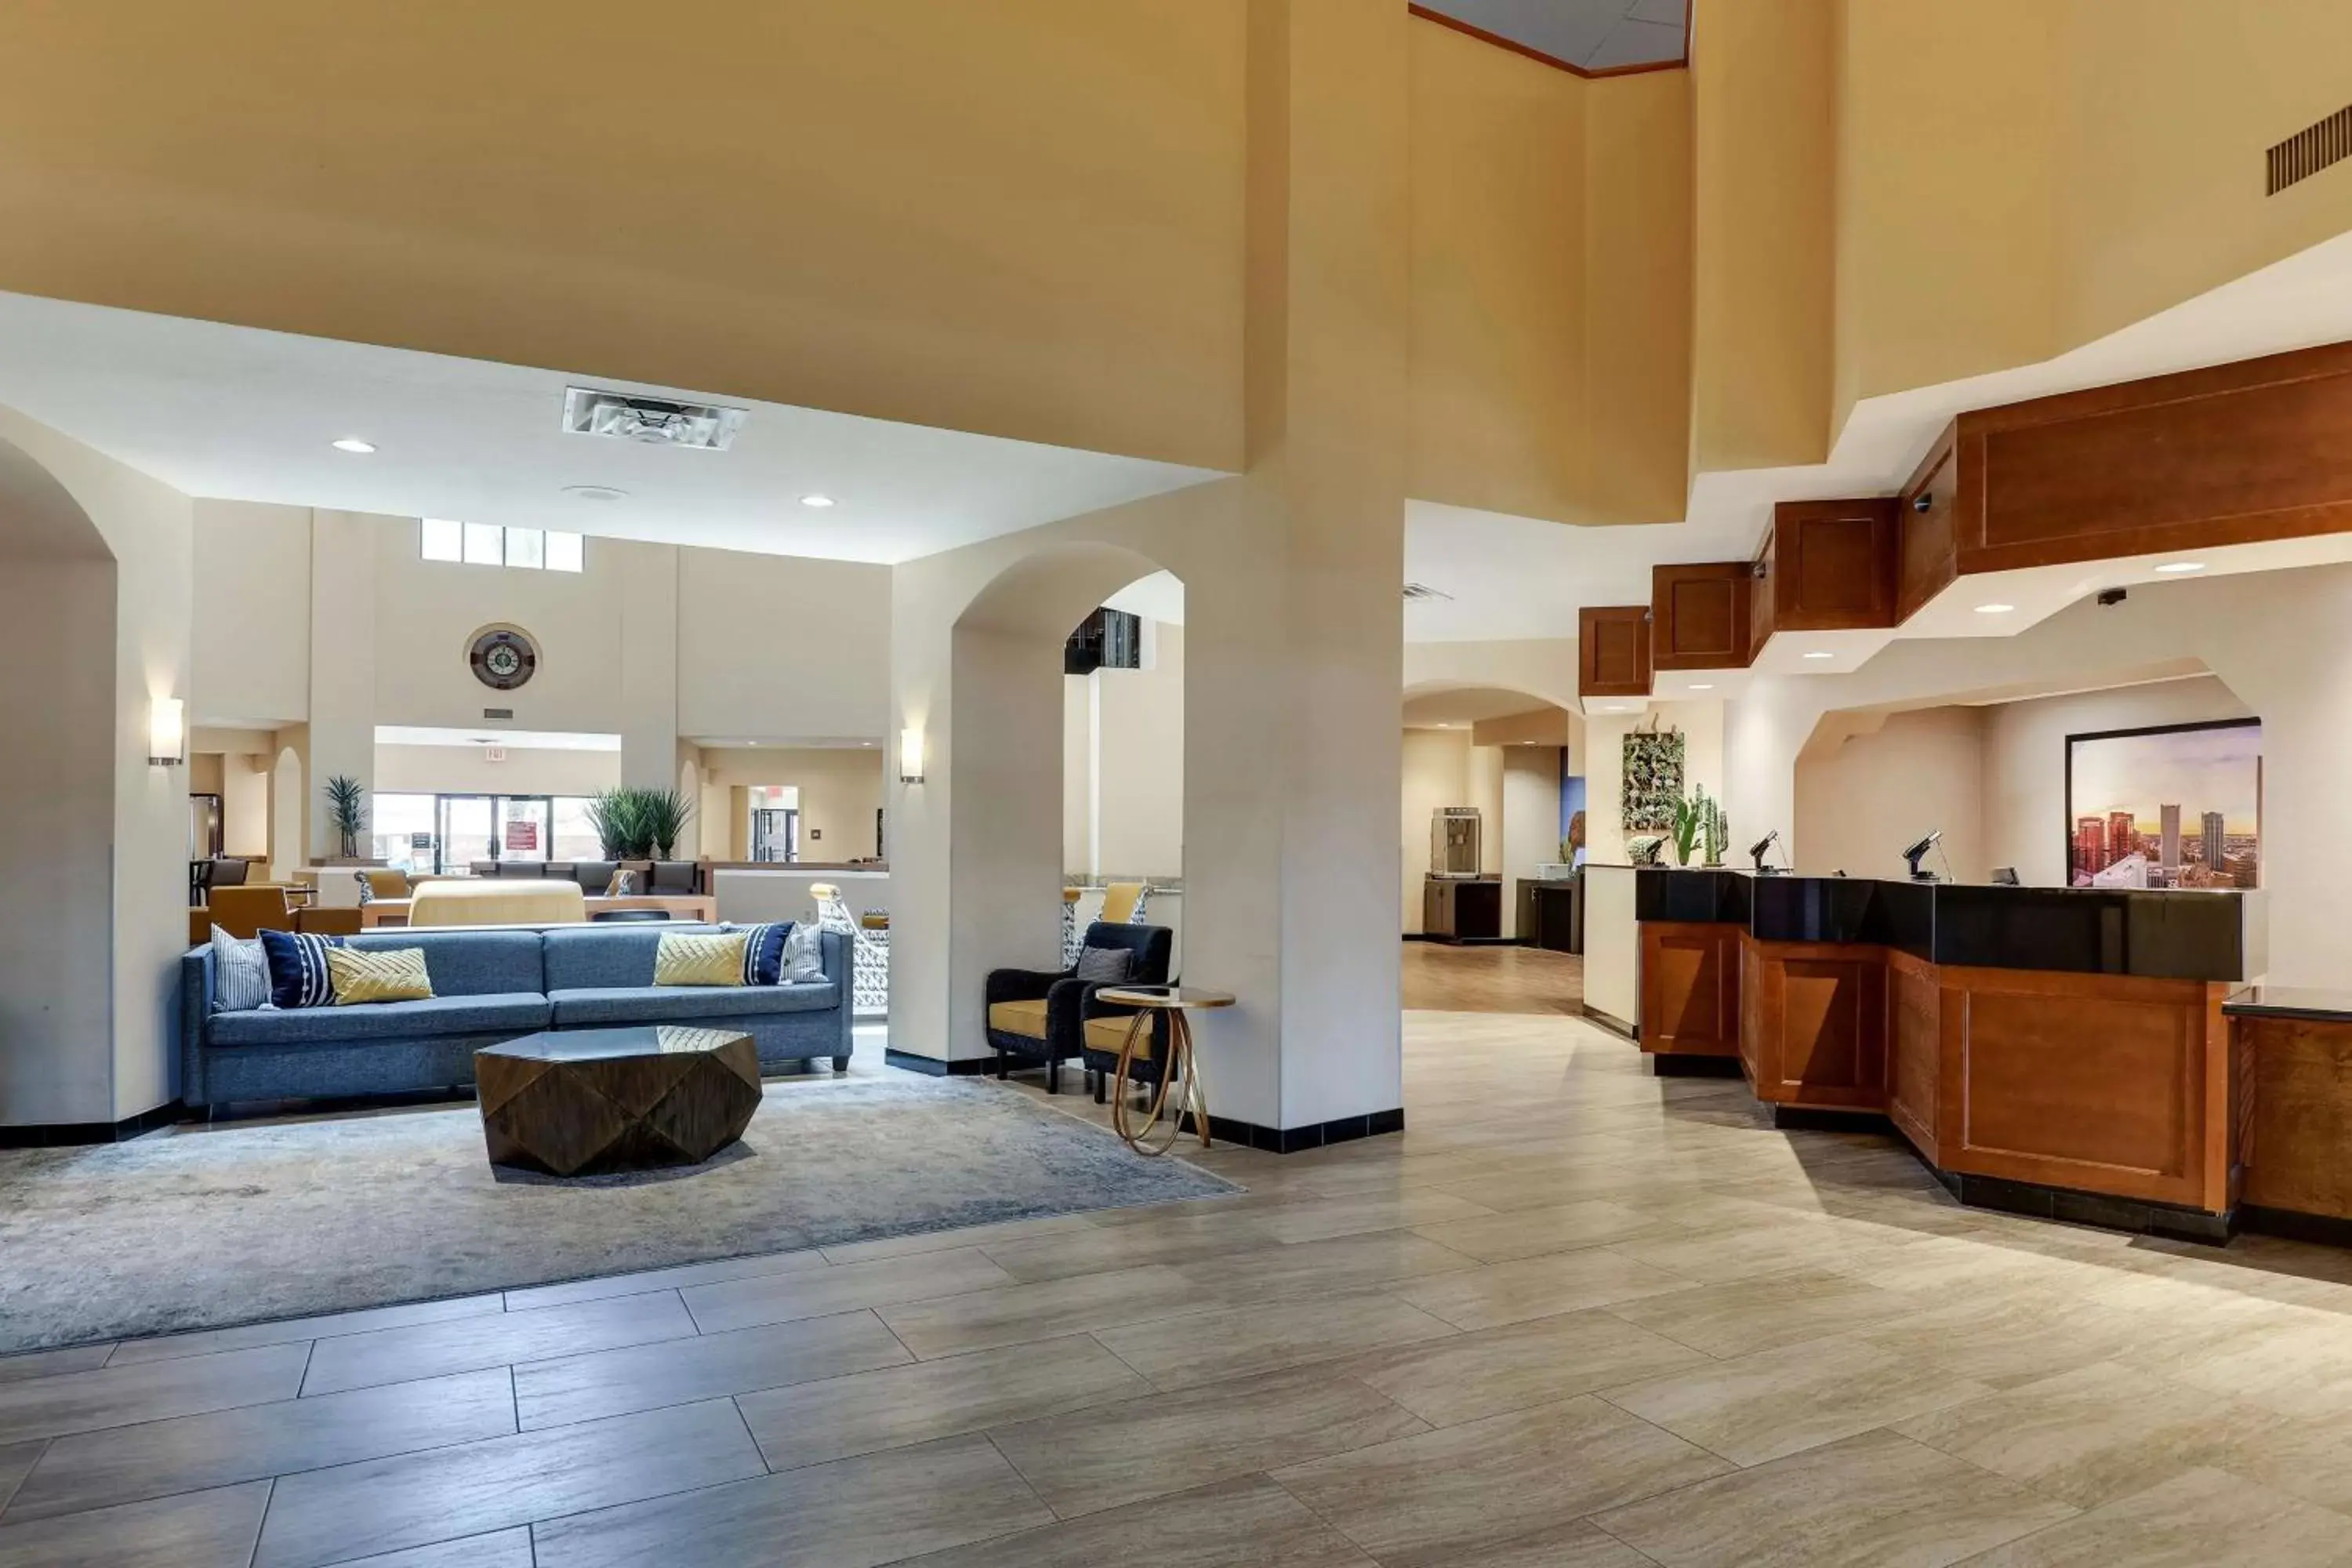 Lobby or reception in Drury Inn & Suites Phoenix Airport